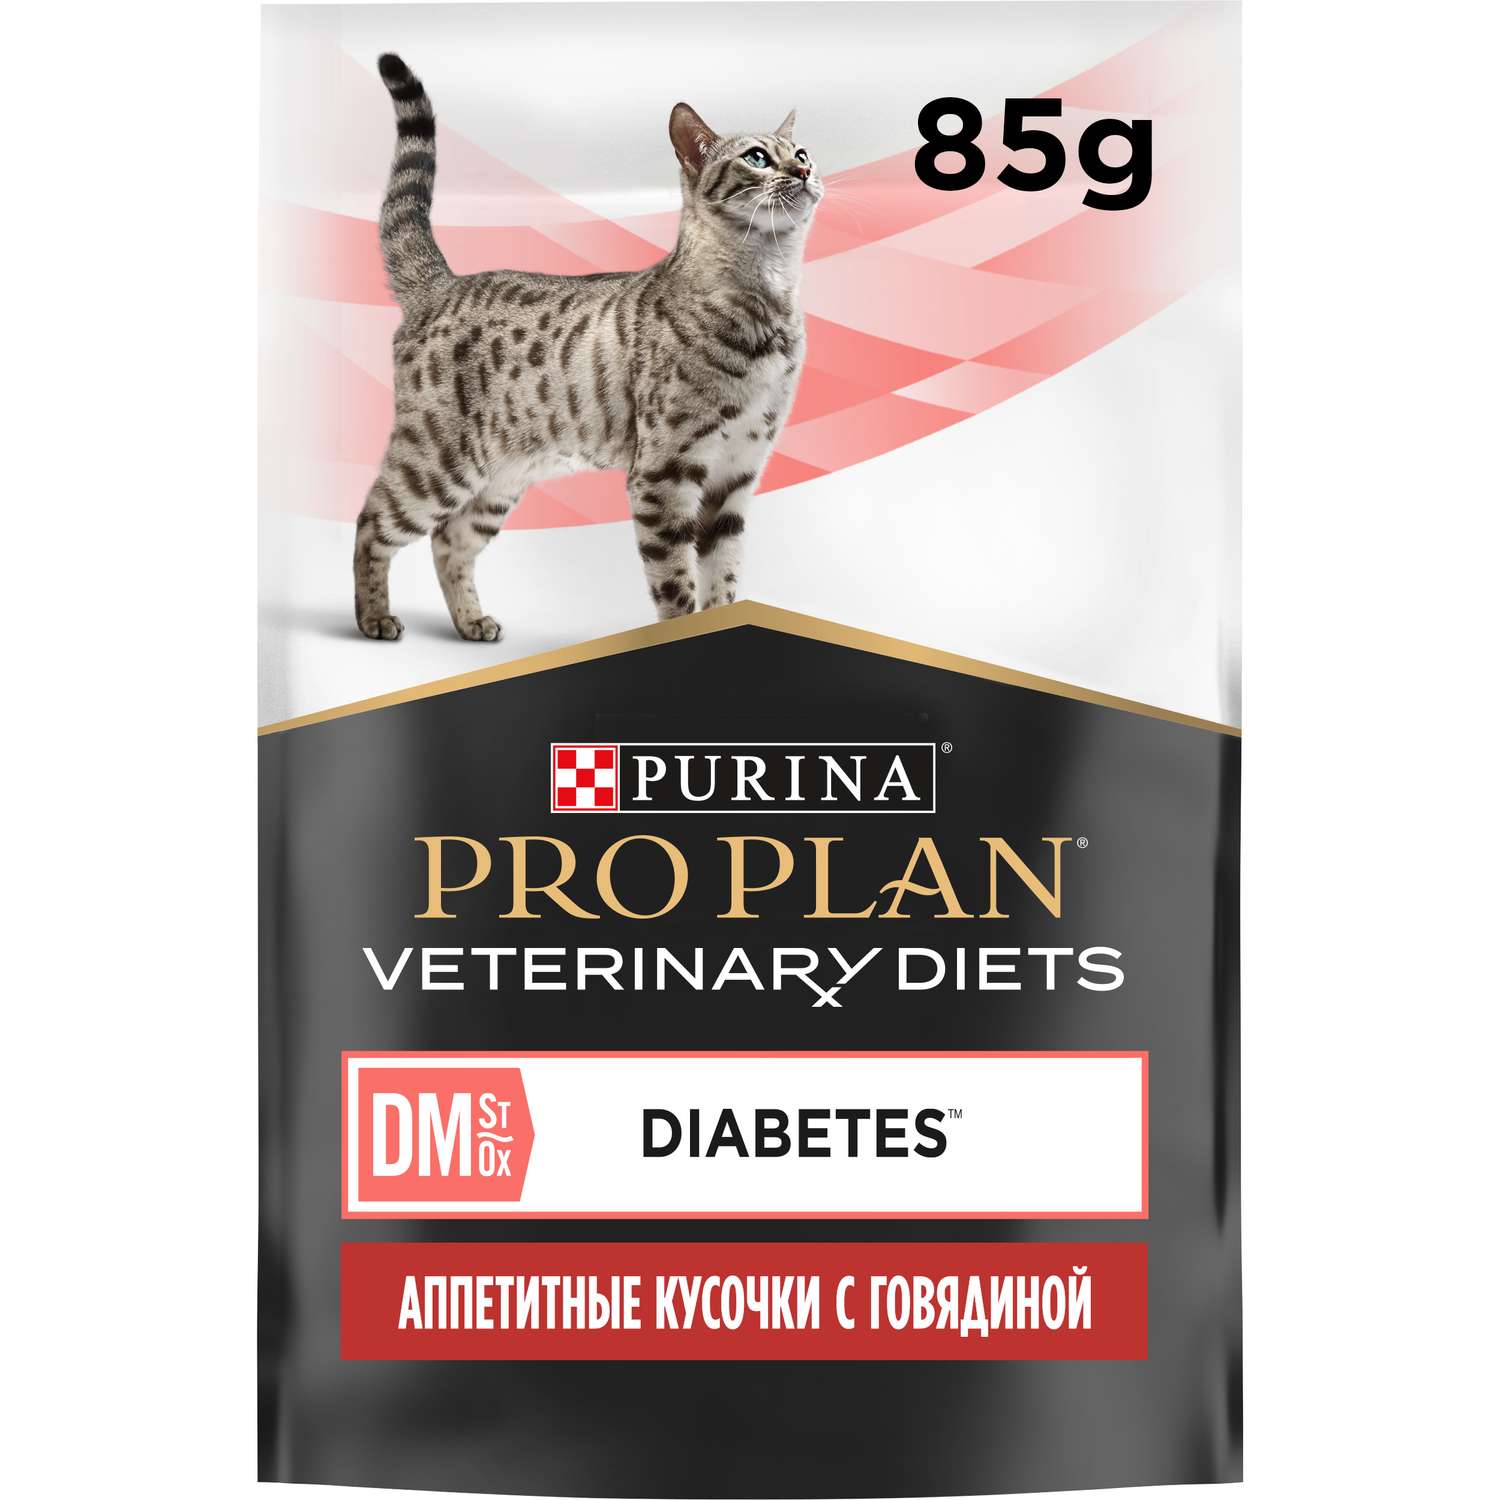 Корм для кошек Purina Pro Plan Veterinary diets 85г с говядиной при сахарном диабете влажный в соусе - фото 2